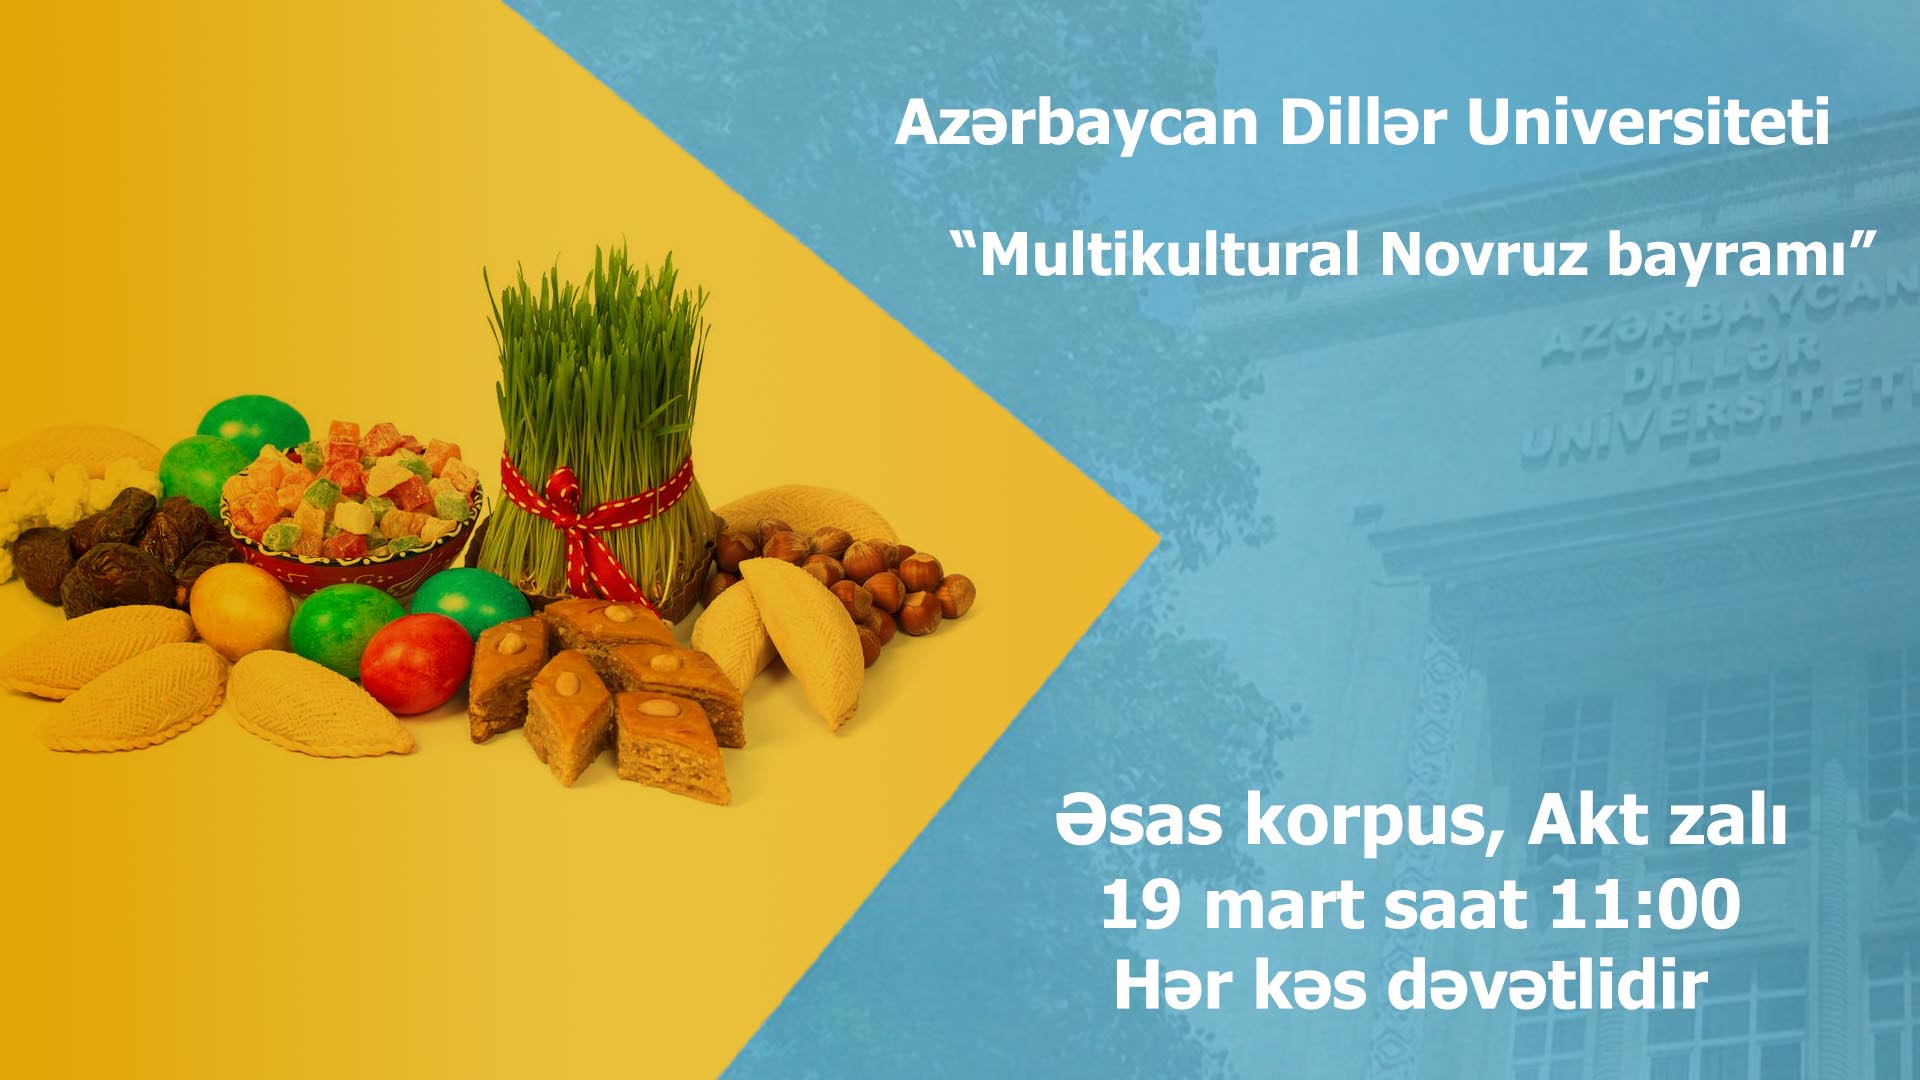 ADU-da “Multikultural Novruz bayramı” adlı tədbir keçiriləcək